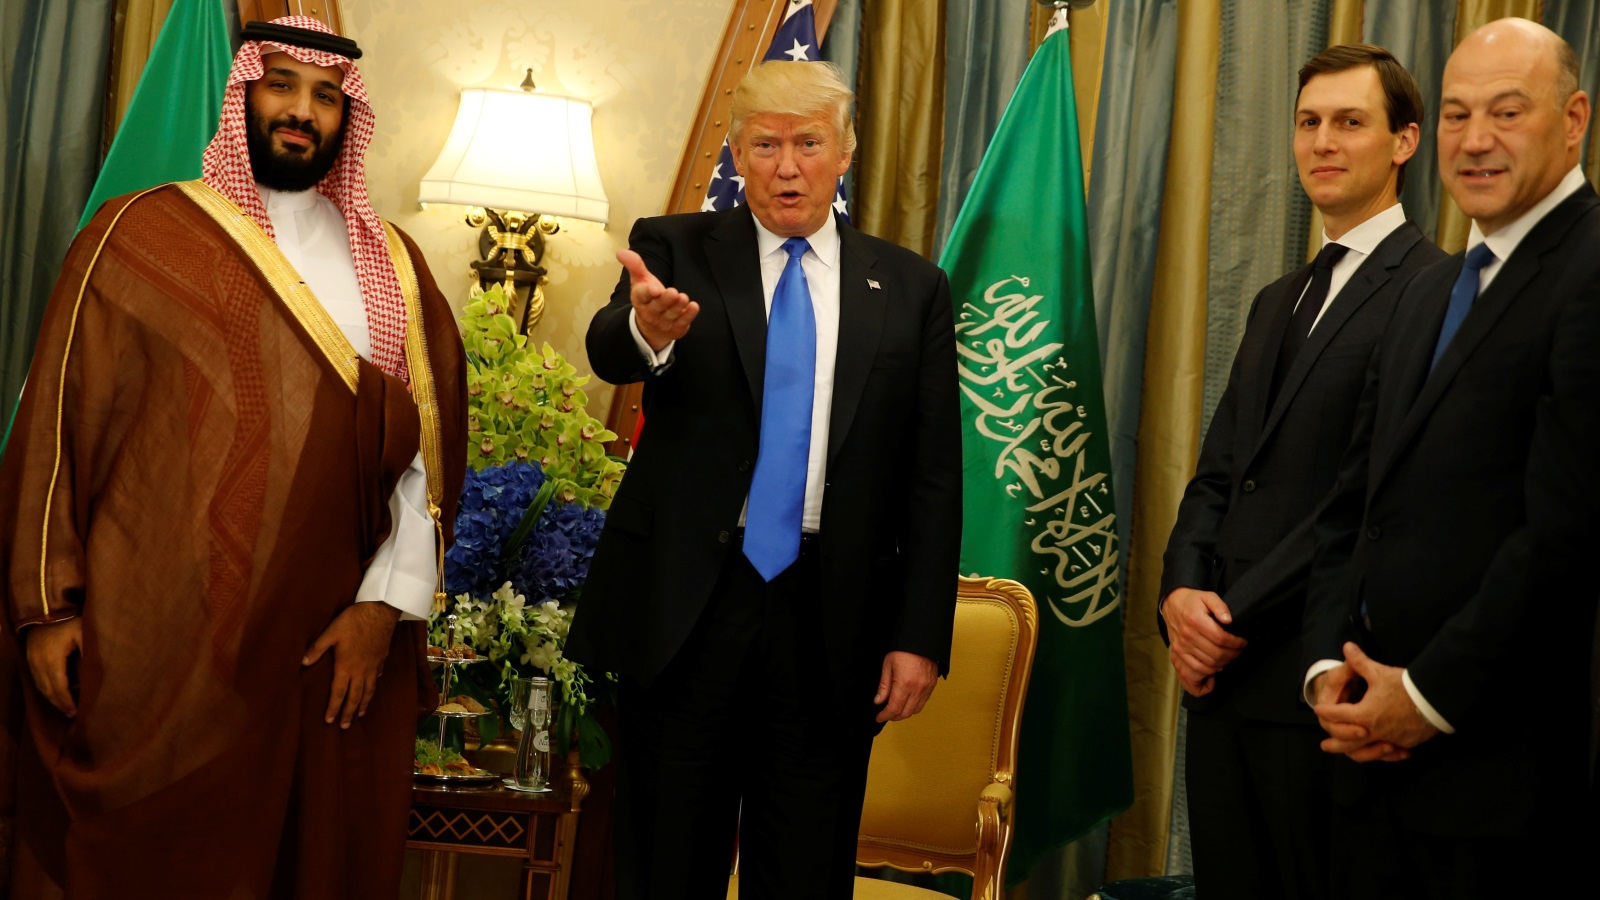 إن مشكلة ترمب وجاريد كوشنر، صهره الذي يقود السياسة الأميركية في هذه المنطقة، هي أنه من المرجح أن تثبت السعودية أنها ليست شريكا دبلوماسيا قويا عكس ما كان يعتقد البيت الأبيض